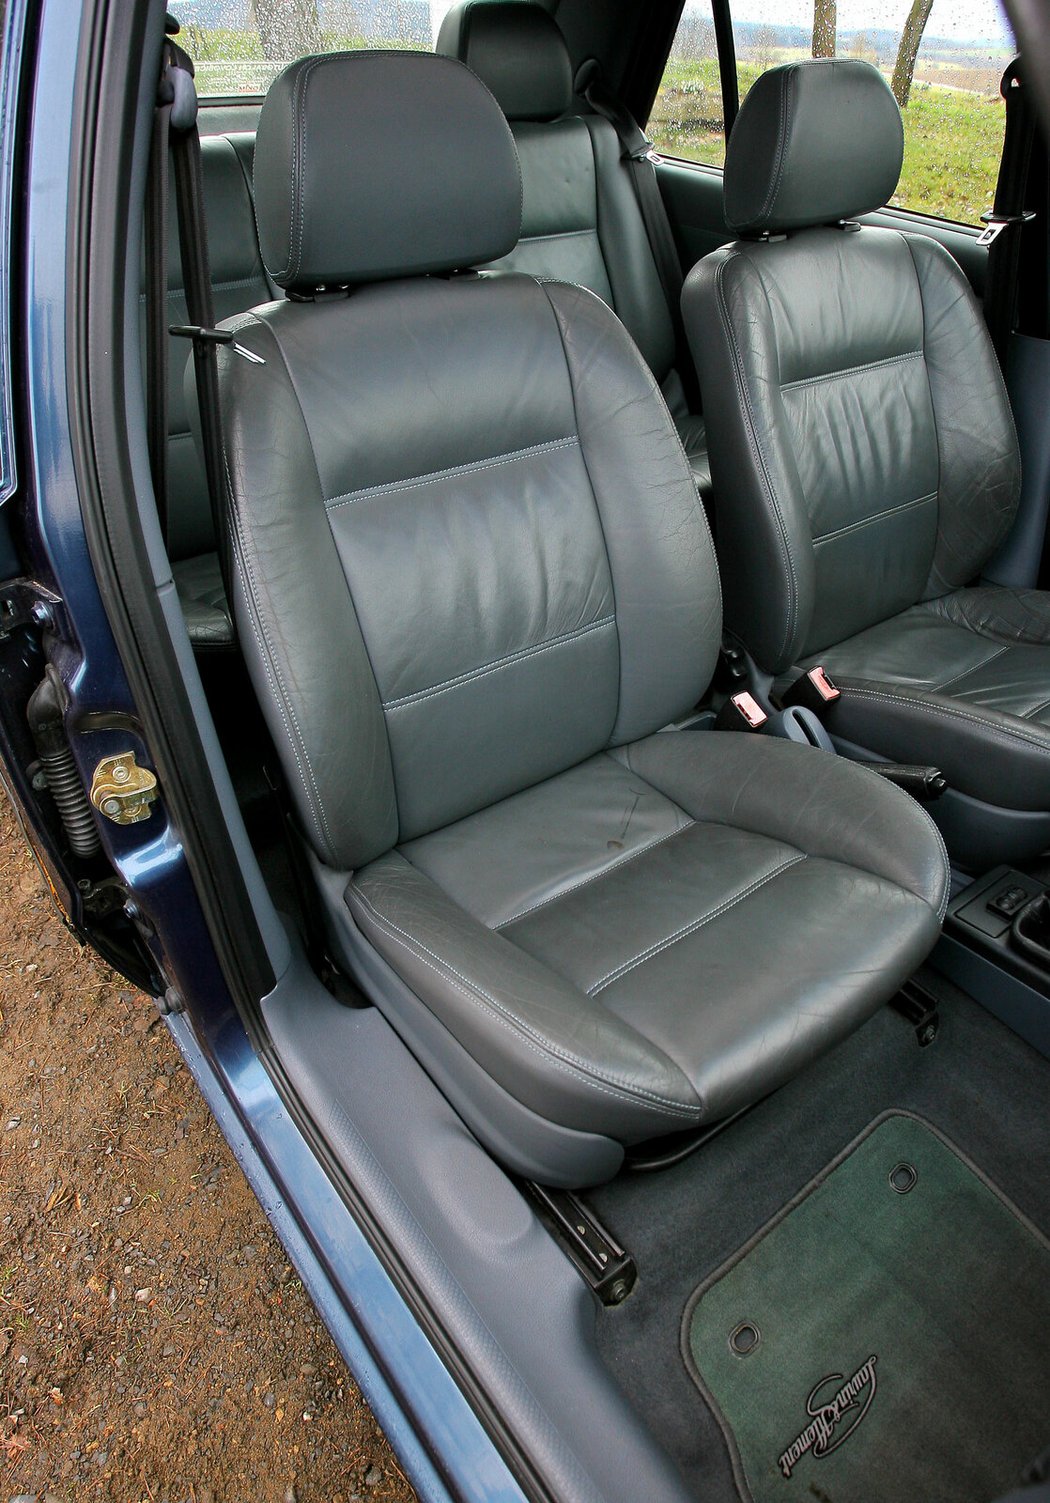 Rozměry sedadel odpovídají malému vozu, potahy jsou několikastupňově vyhřívané, což tehdy byla výsada luxusních aut